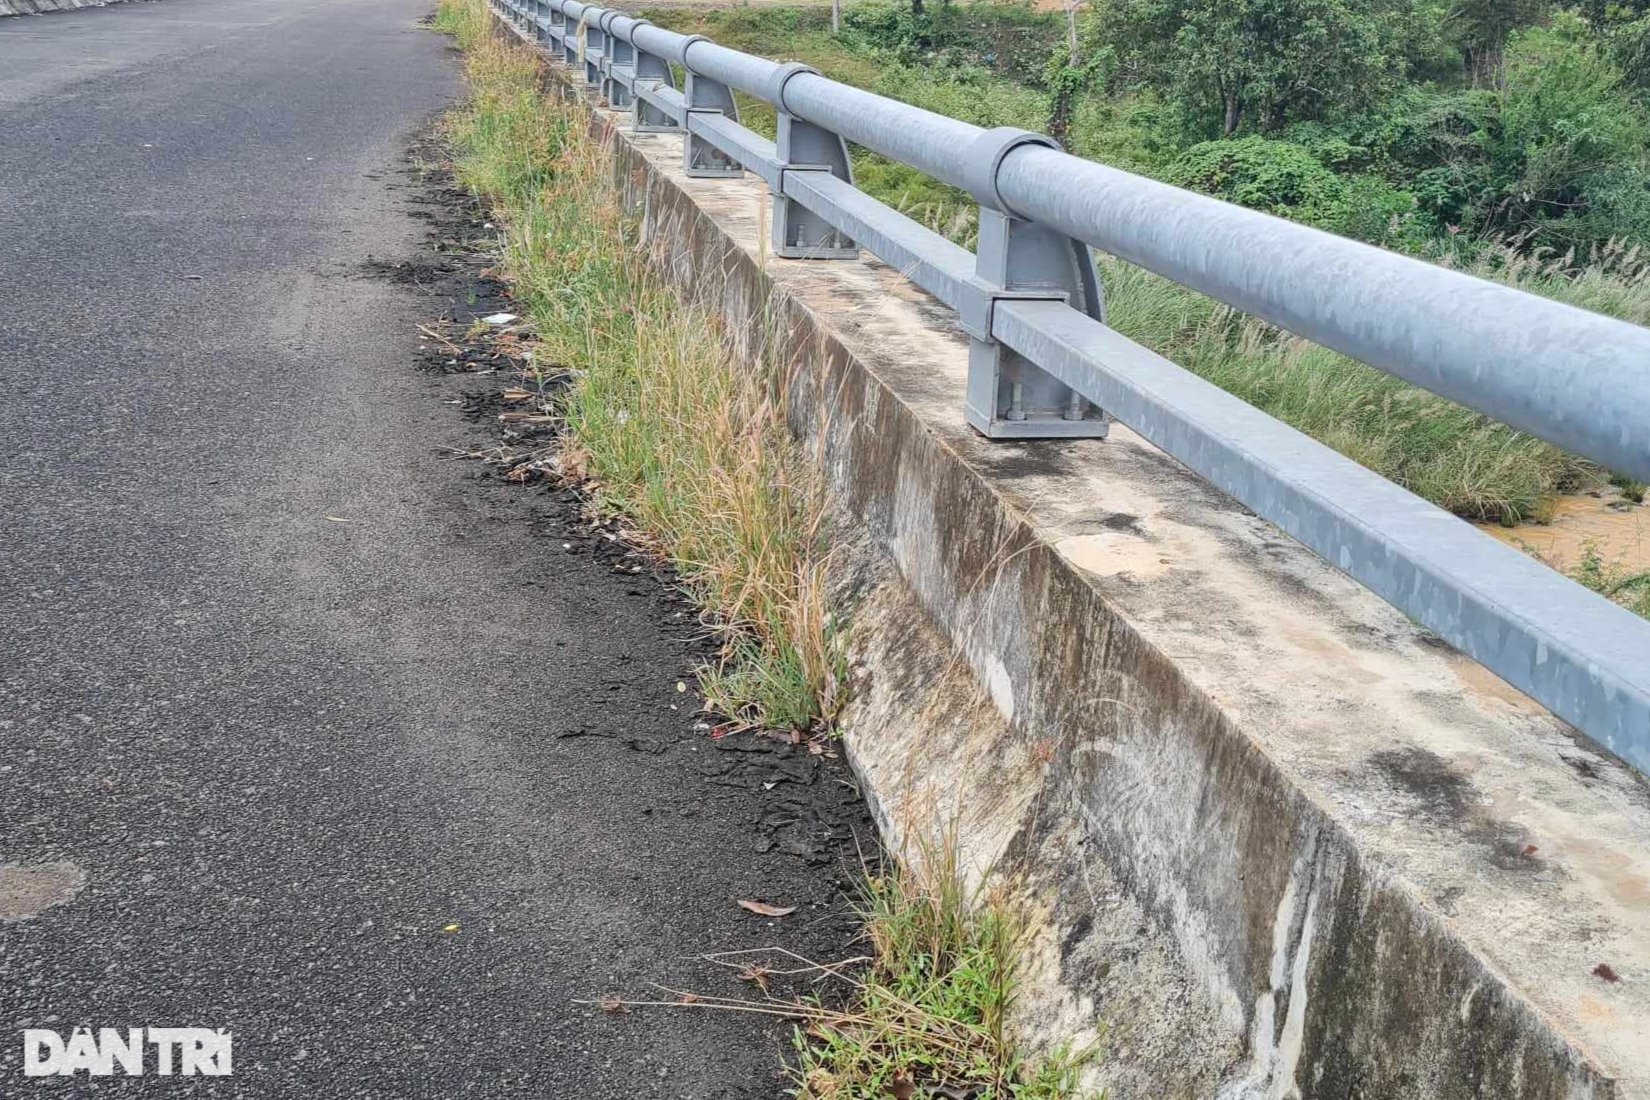 Đề xuất xã hội hóa để hoàn tất cây cầu dang dở nối Đắk Lắk - Gia Lai - 5